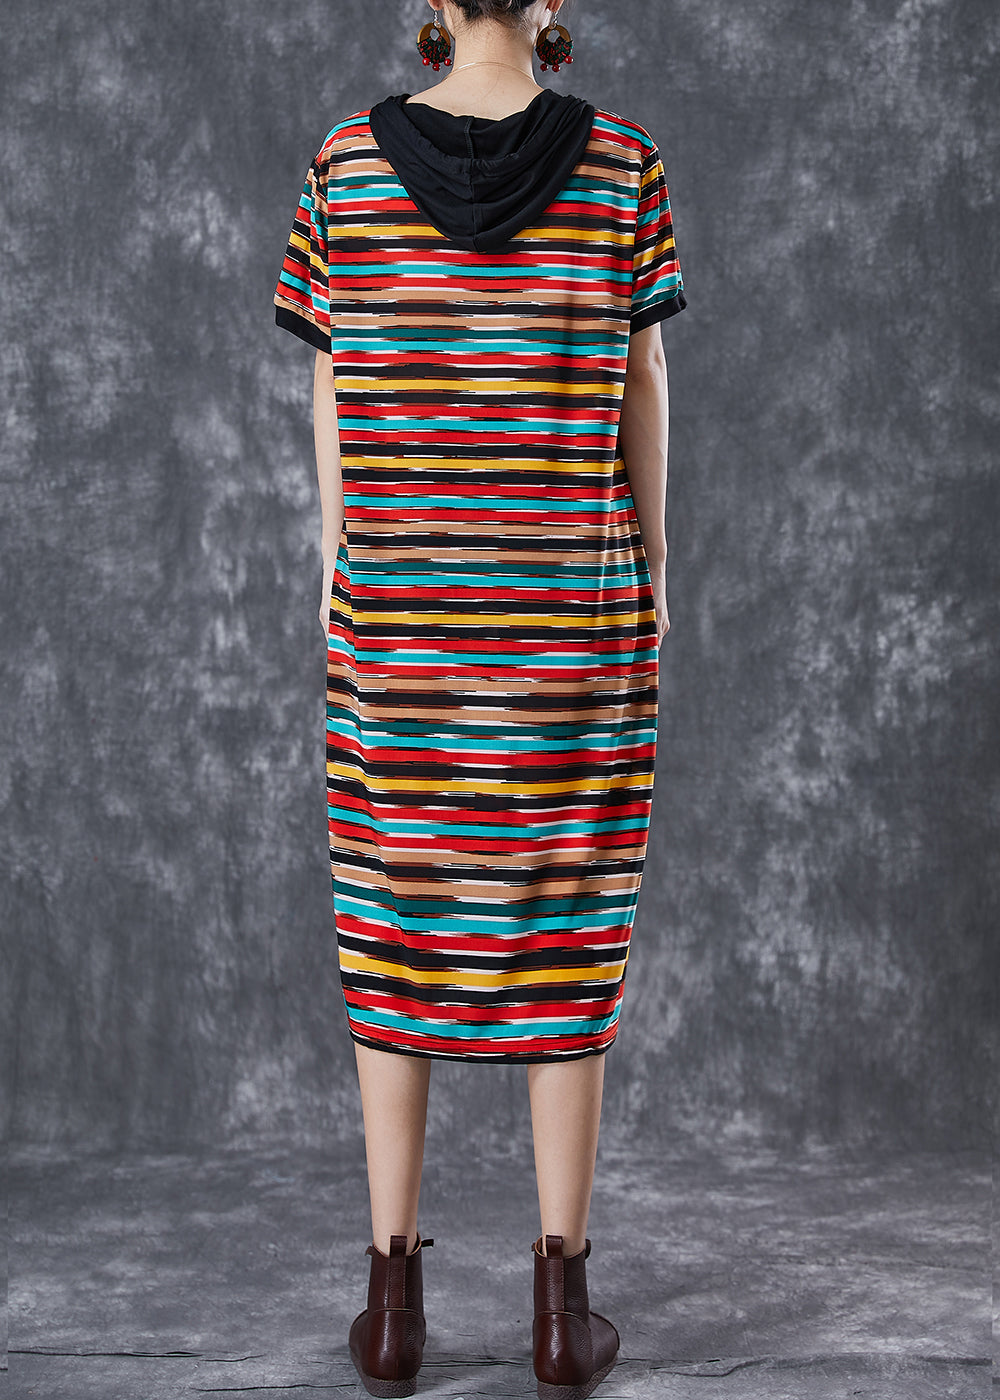 DIY Rainbow Hooded Striped Chiffon Robe Dresses Summer Ada Fashion